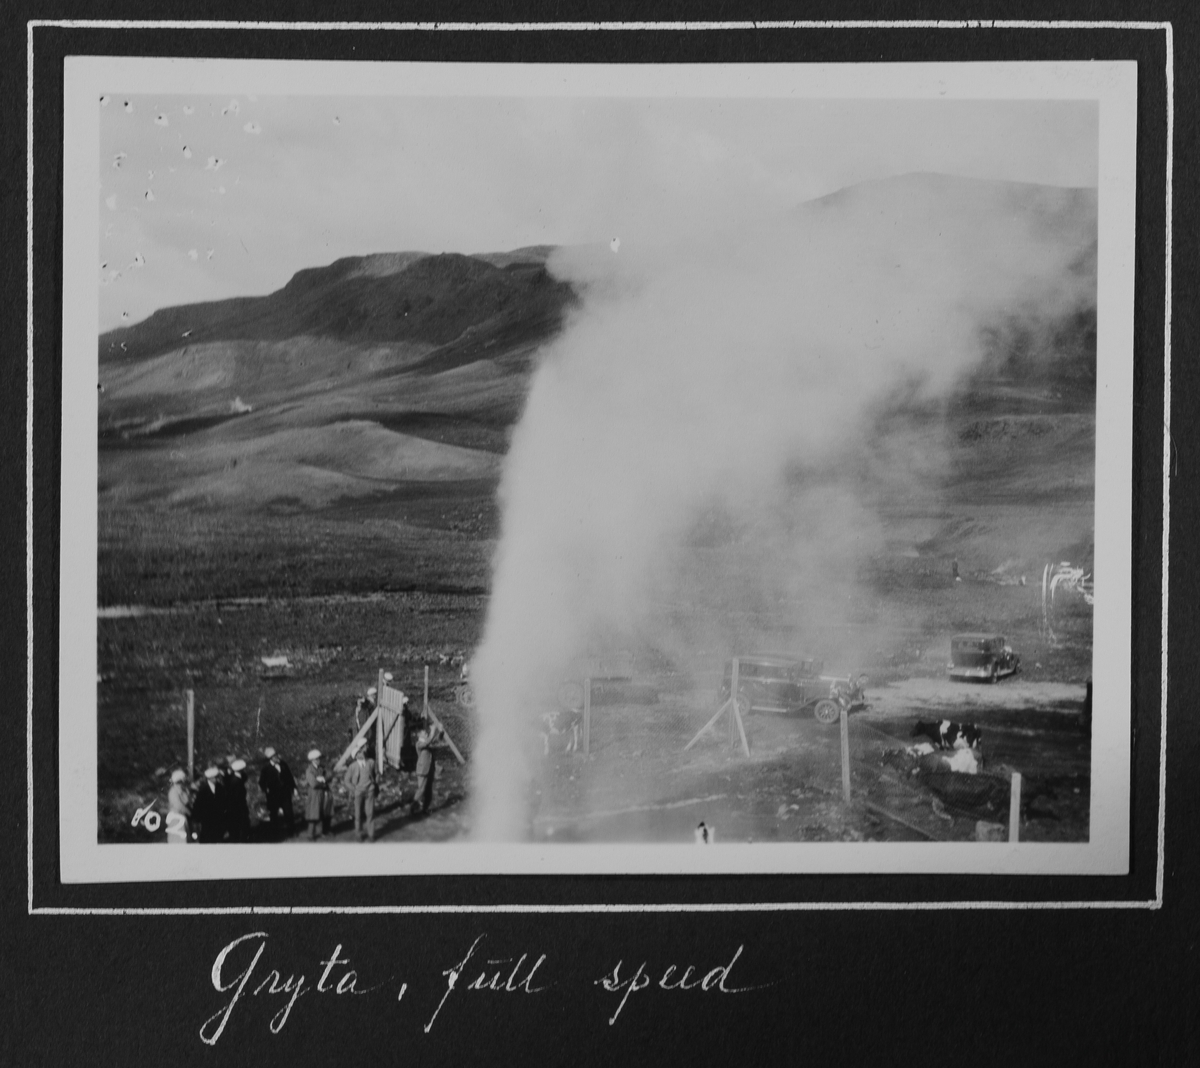 Fra 1000 årsfesten for Alltinget på Island i 1930.  Gryta, "full speed"